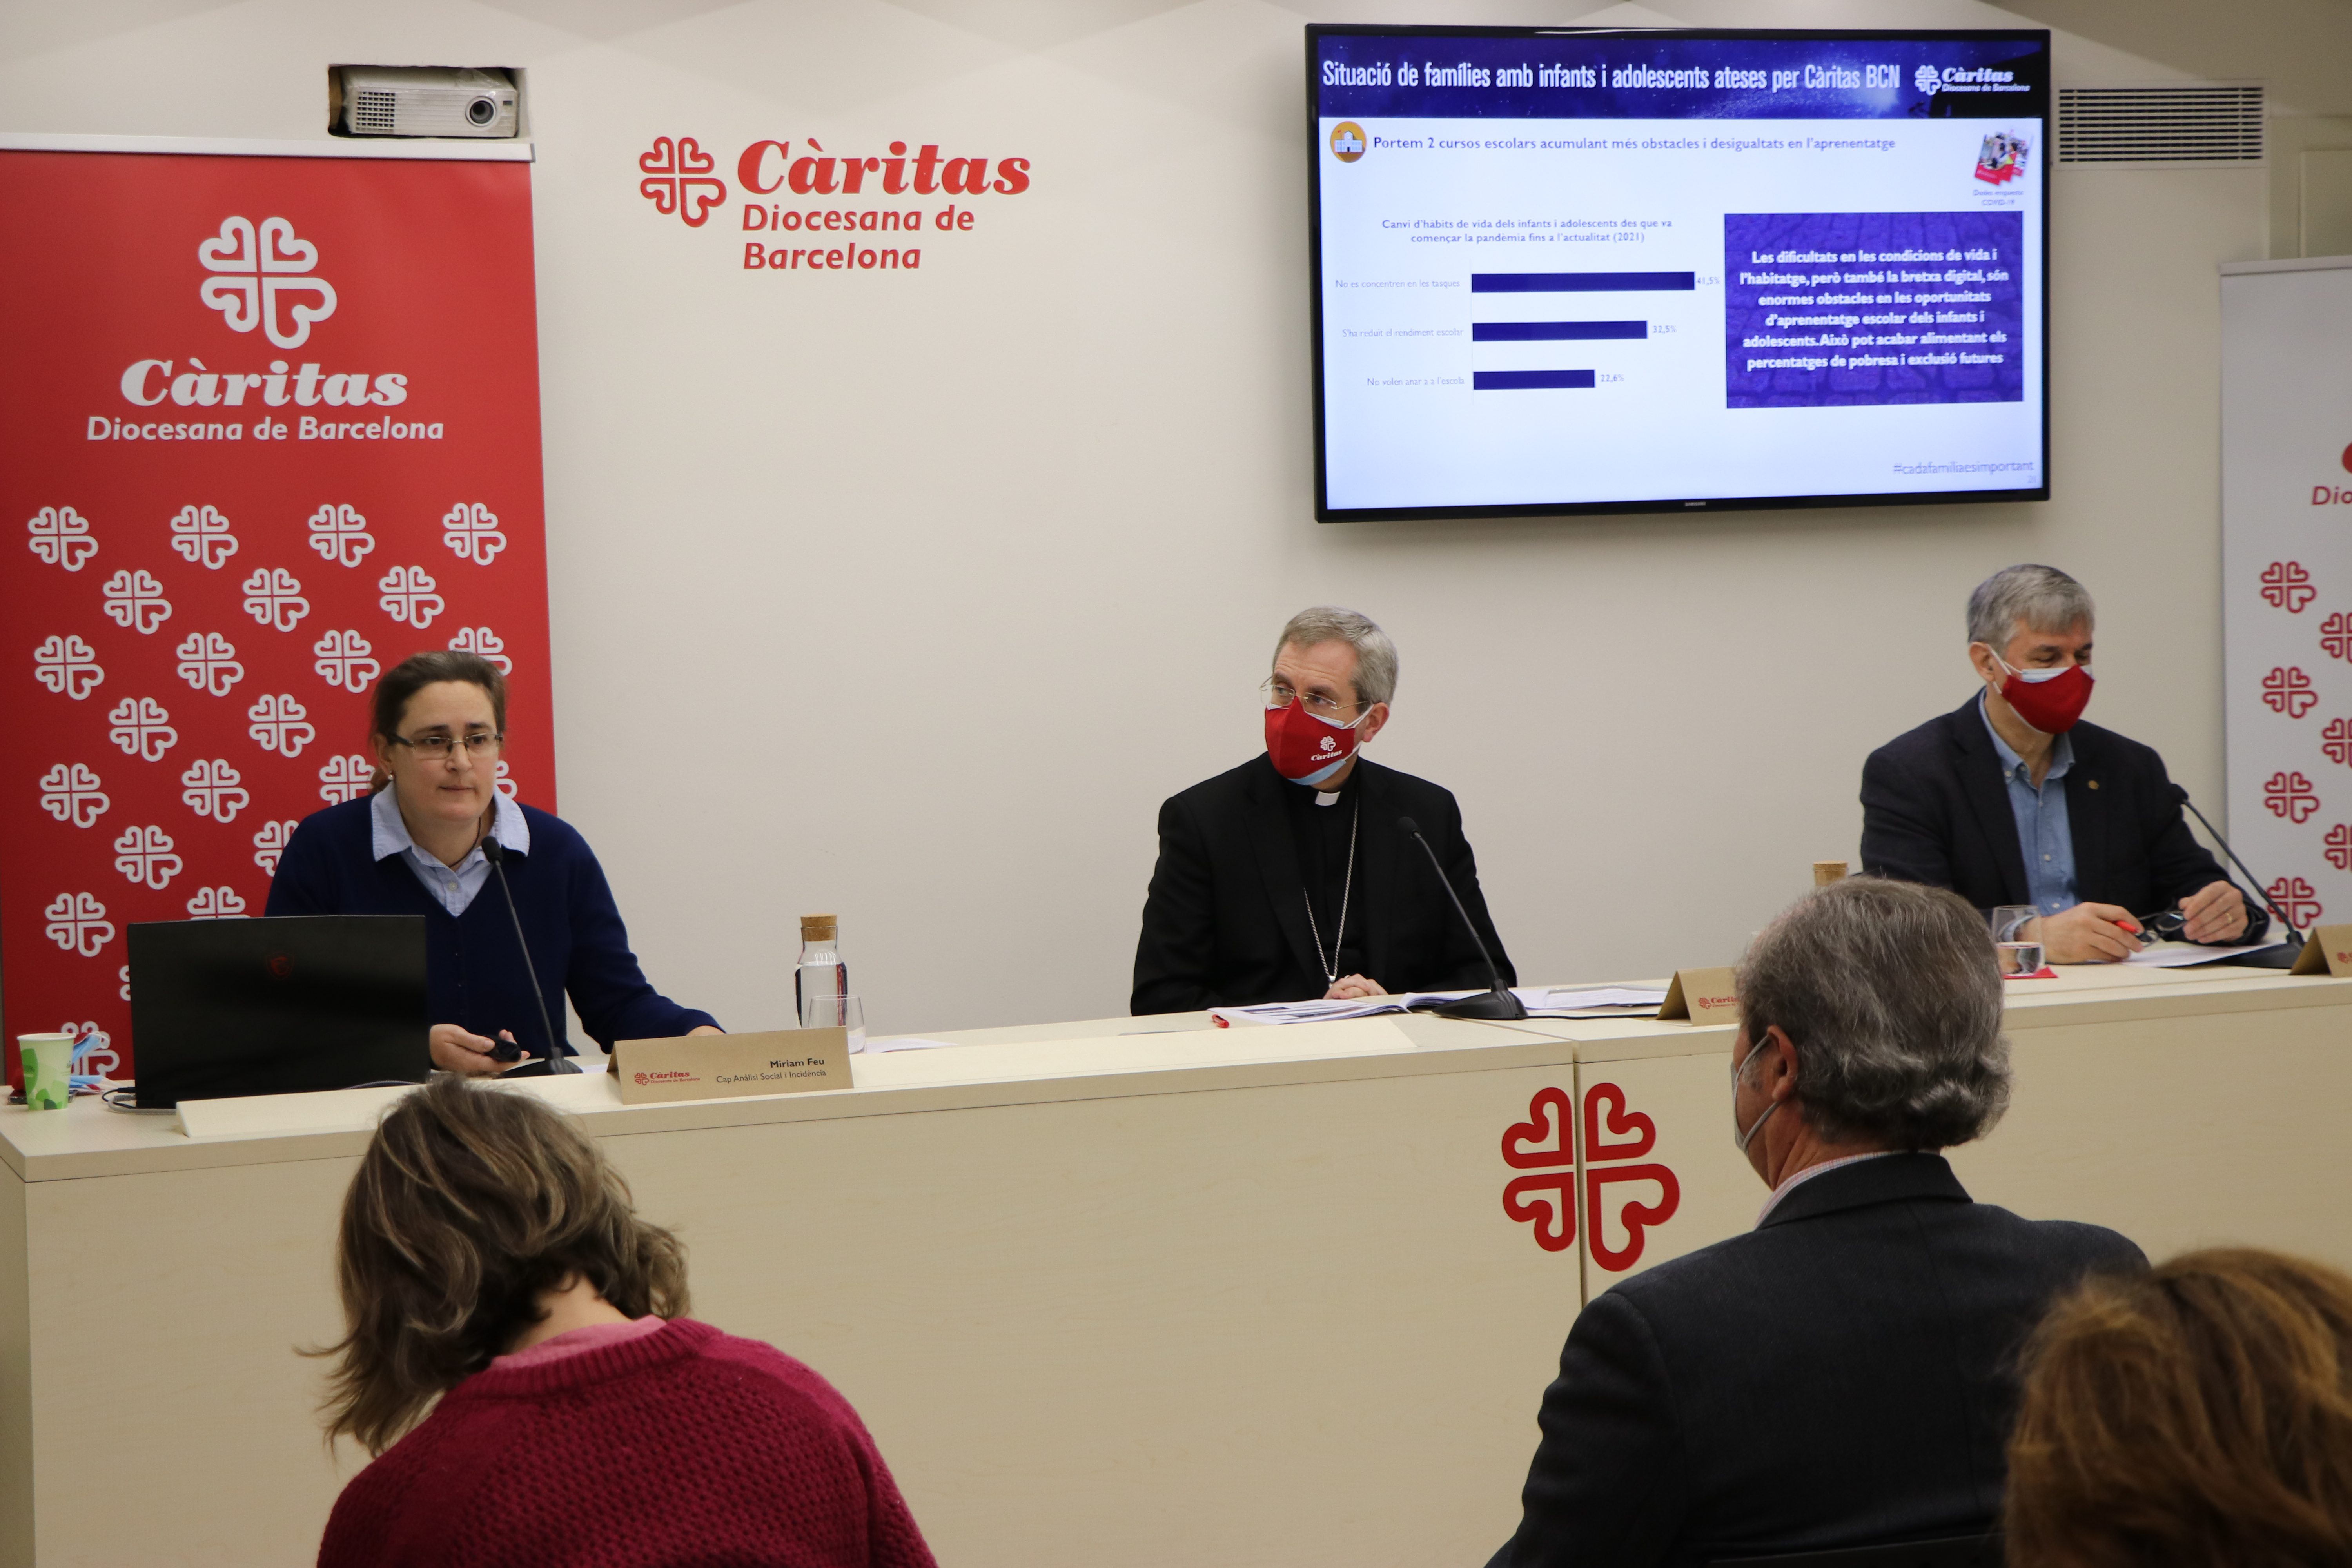 4 de cada 10 famílies amb infants i adolescents de la diòcesi de Barcelona es troben en exclusió social